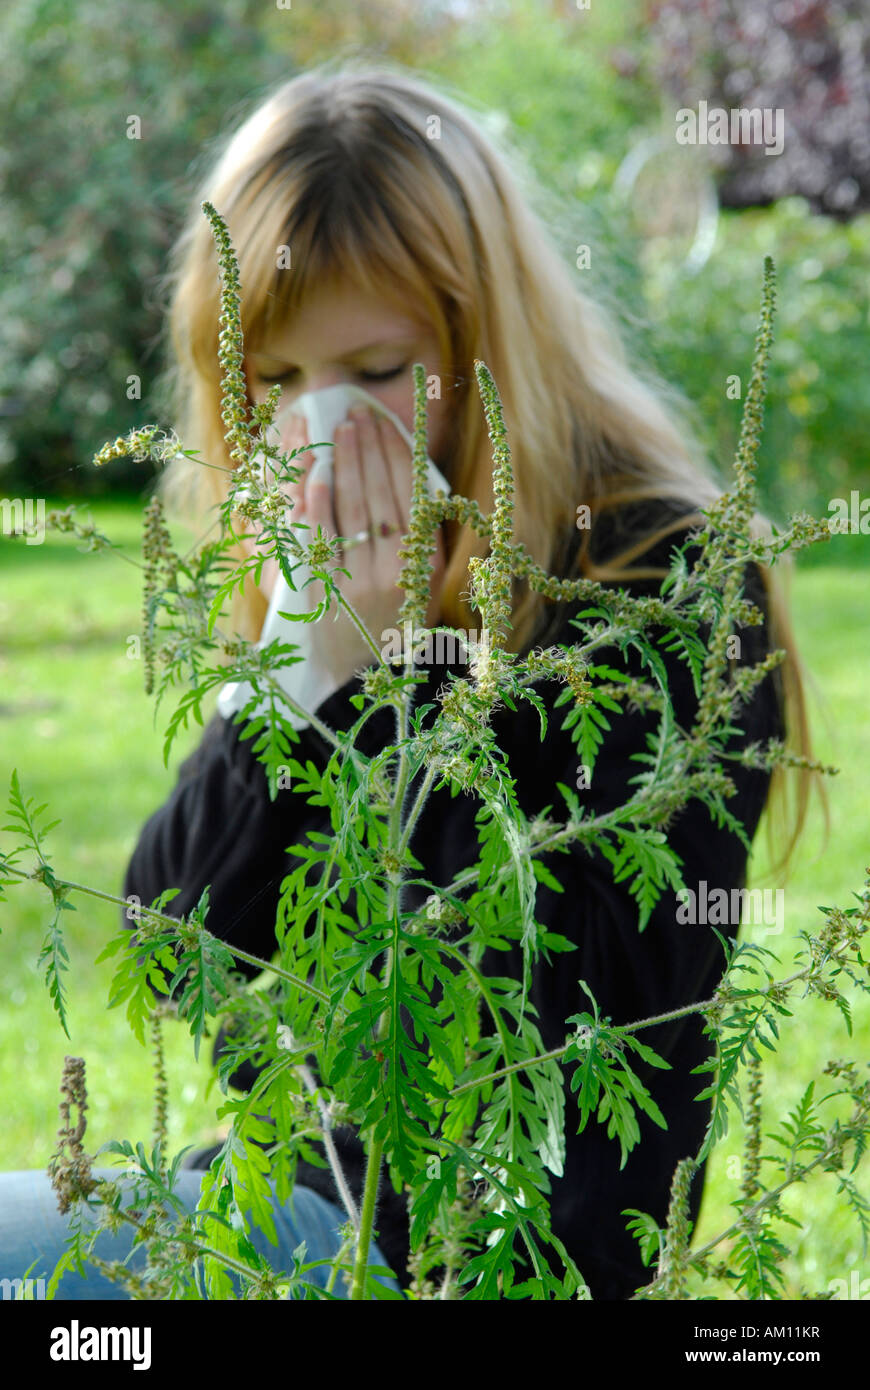 La réaction allergique à l'herbe à poux, femme Banque D'Images